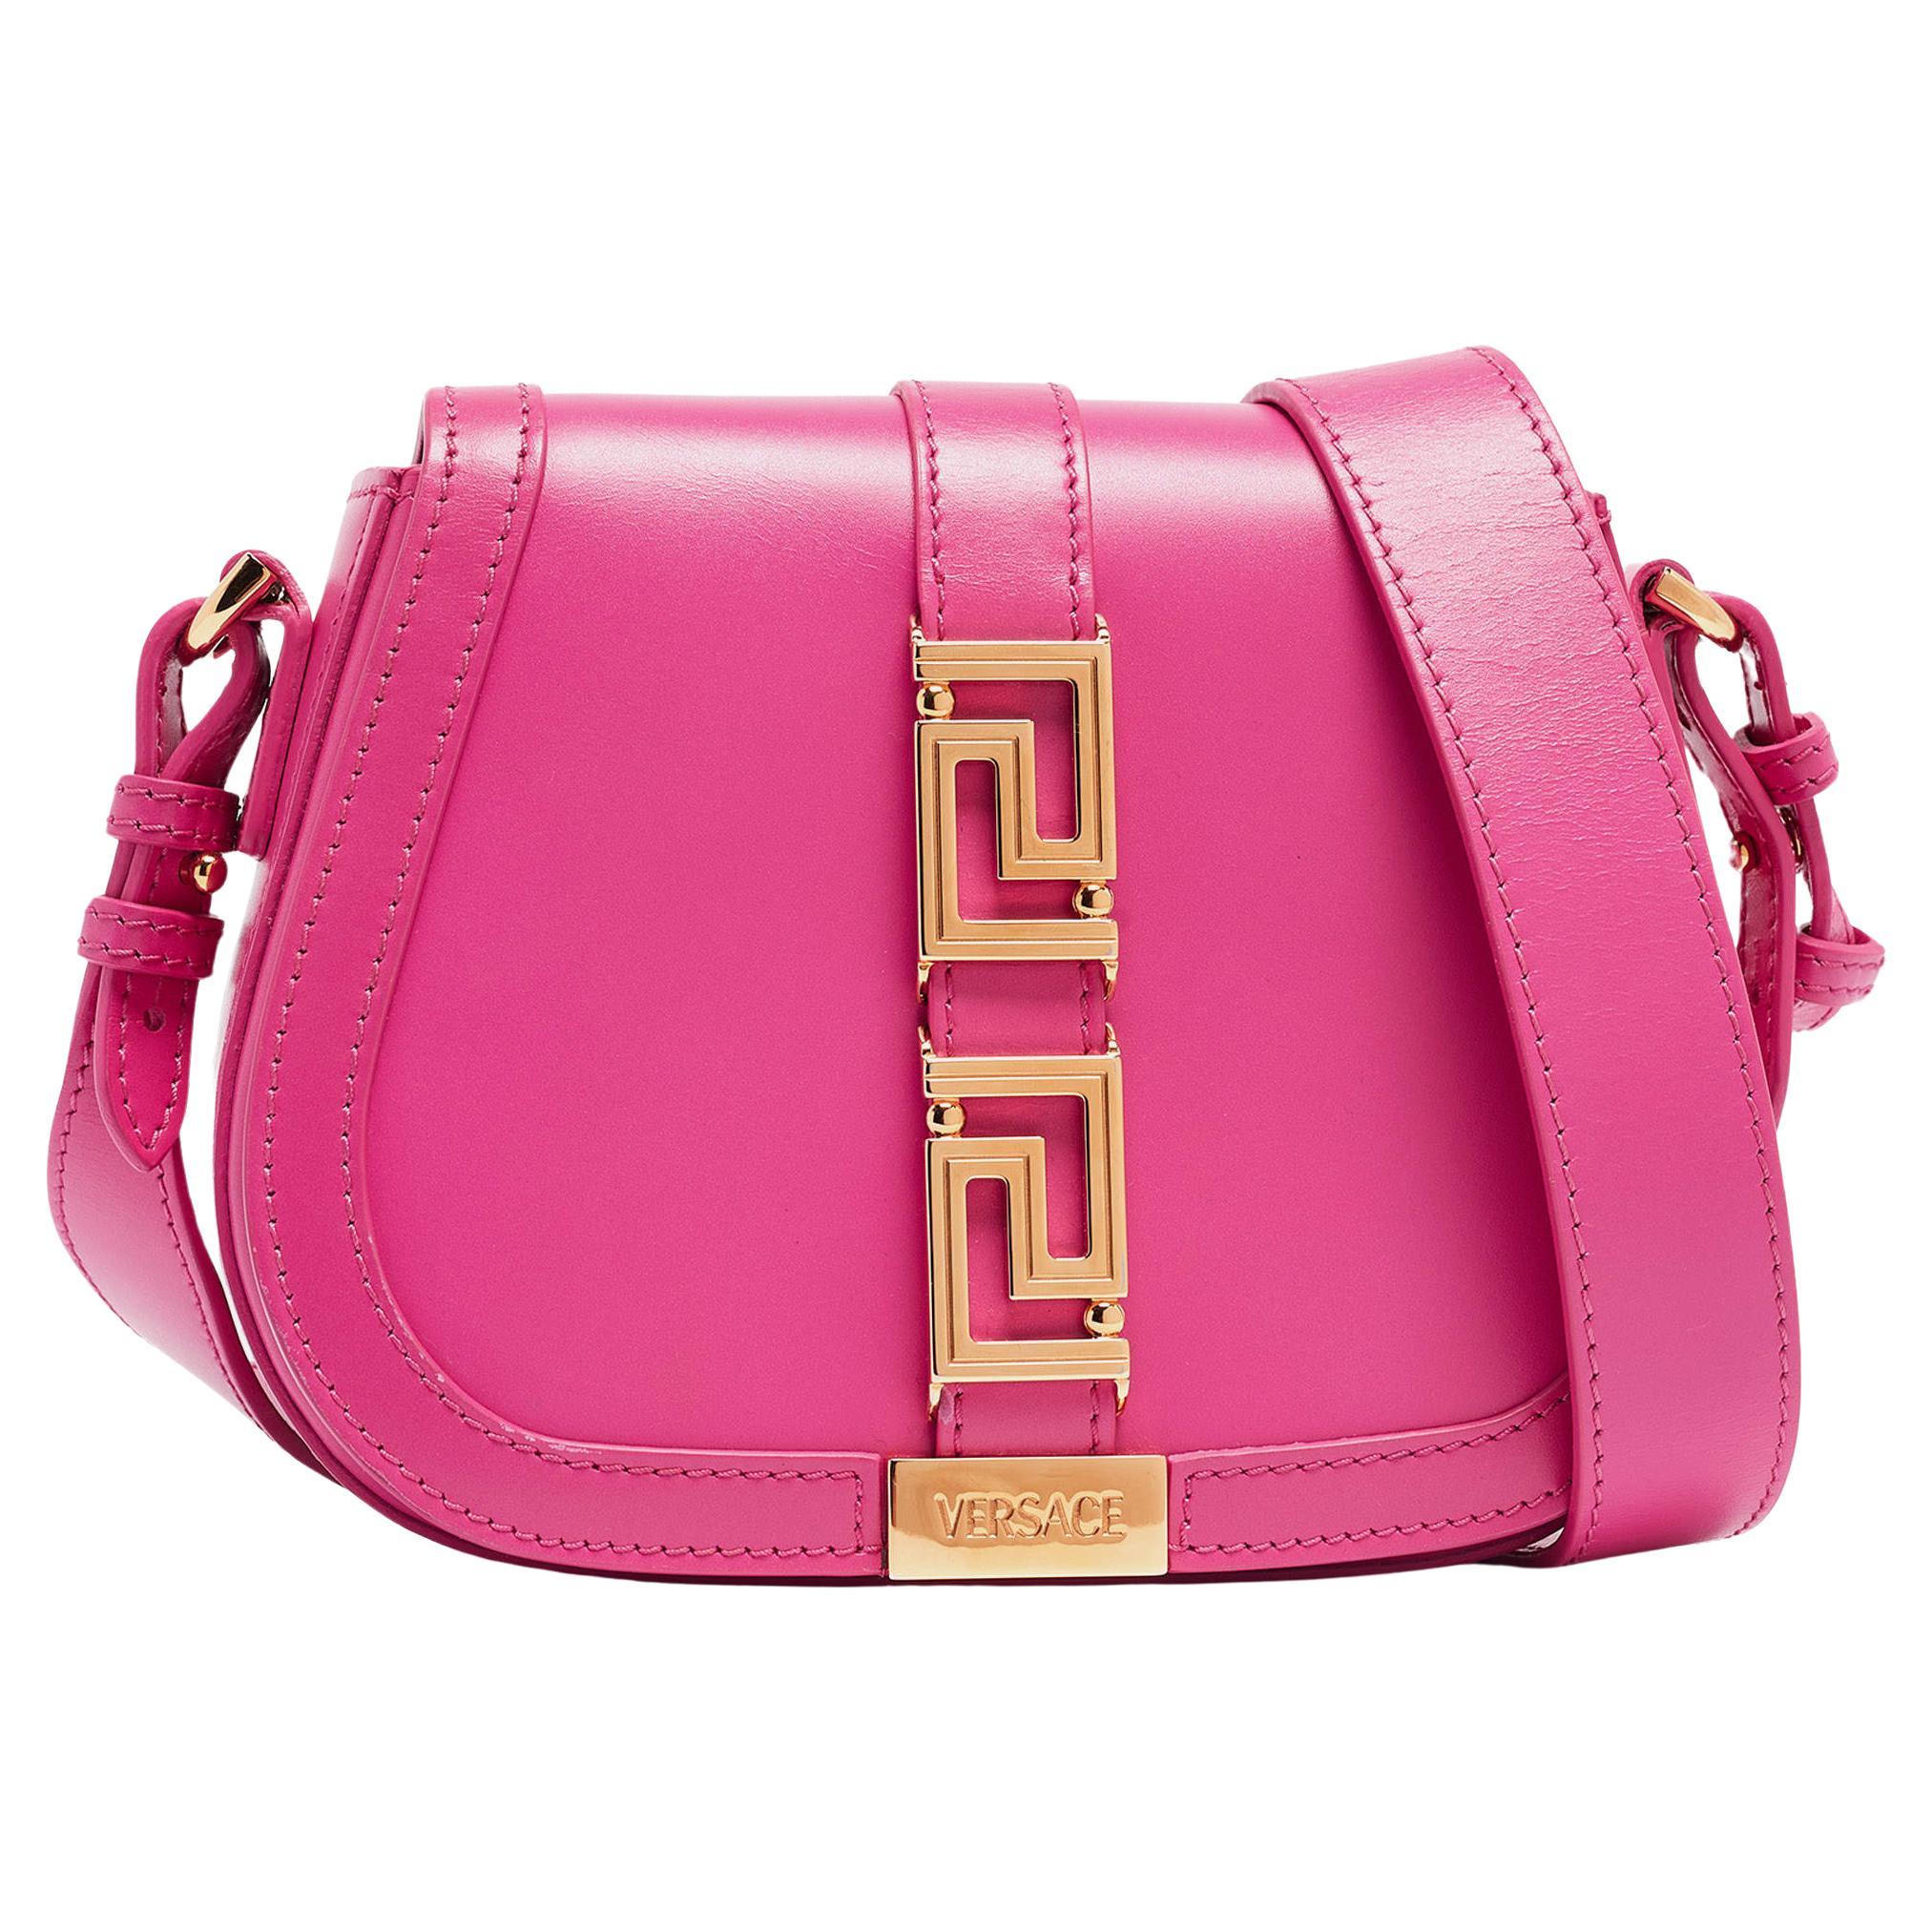 Versace Pink Leather Greca Shoulder Bag